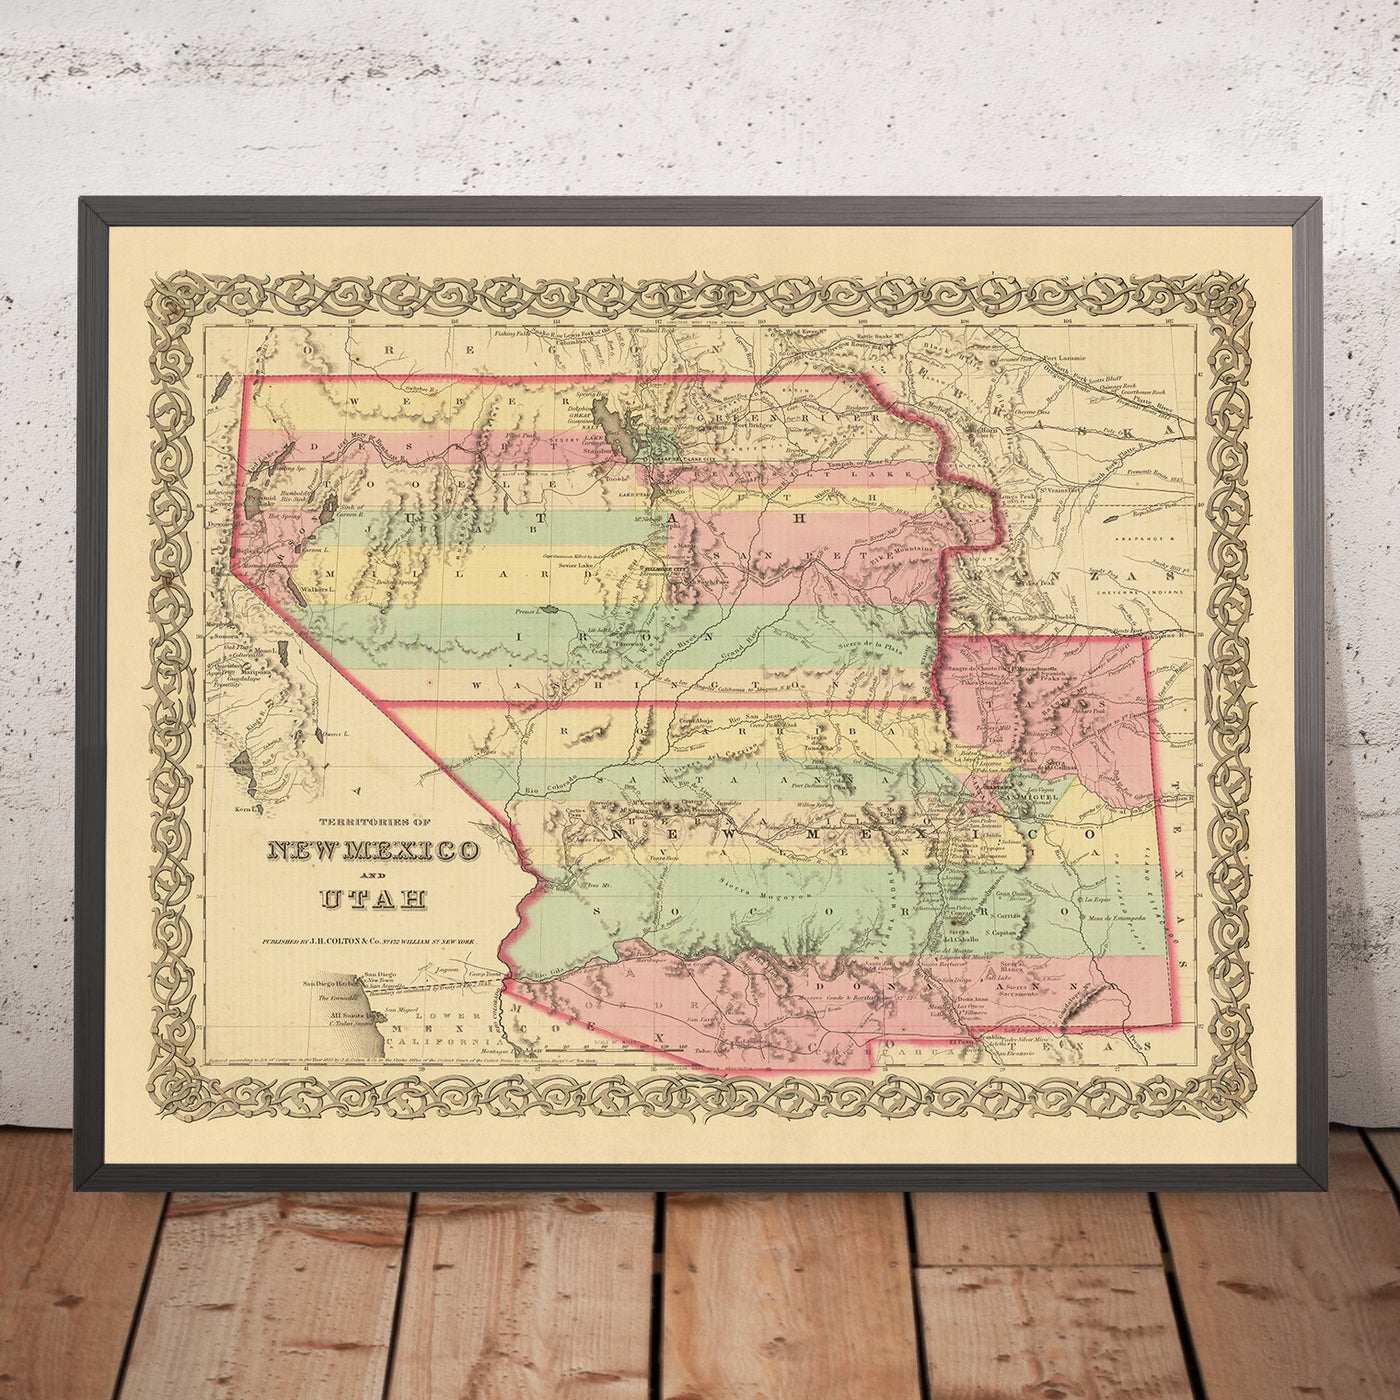 Ancienne carte du Nouveau-Mexique et de l'Utah par JH Colton, 1856 : Santa Fe, Albuquerque, Provo, Salt Lake City, St. George